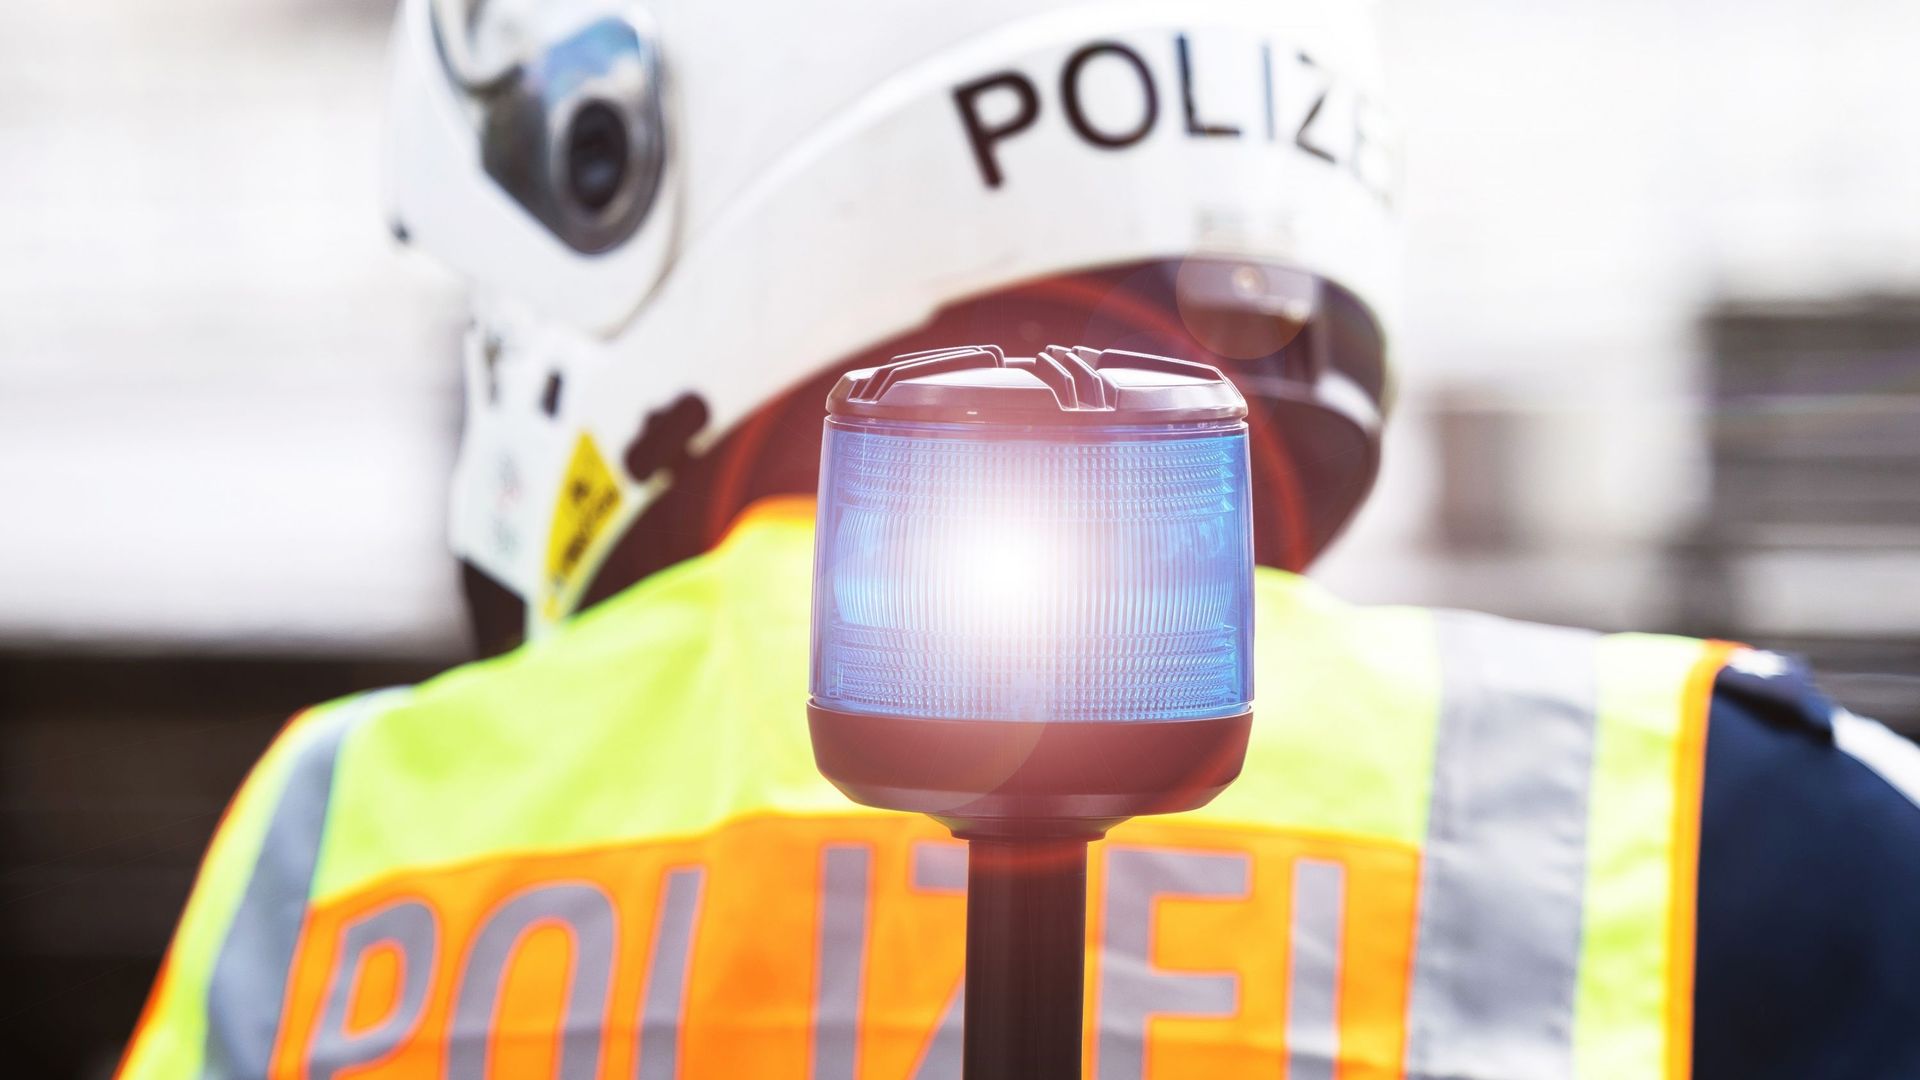 Police allemande (illustration)